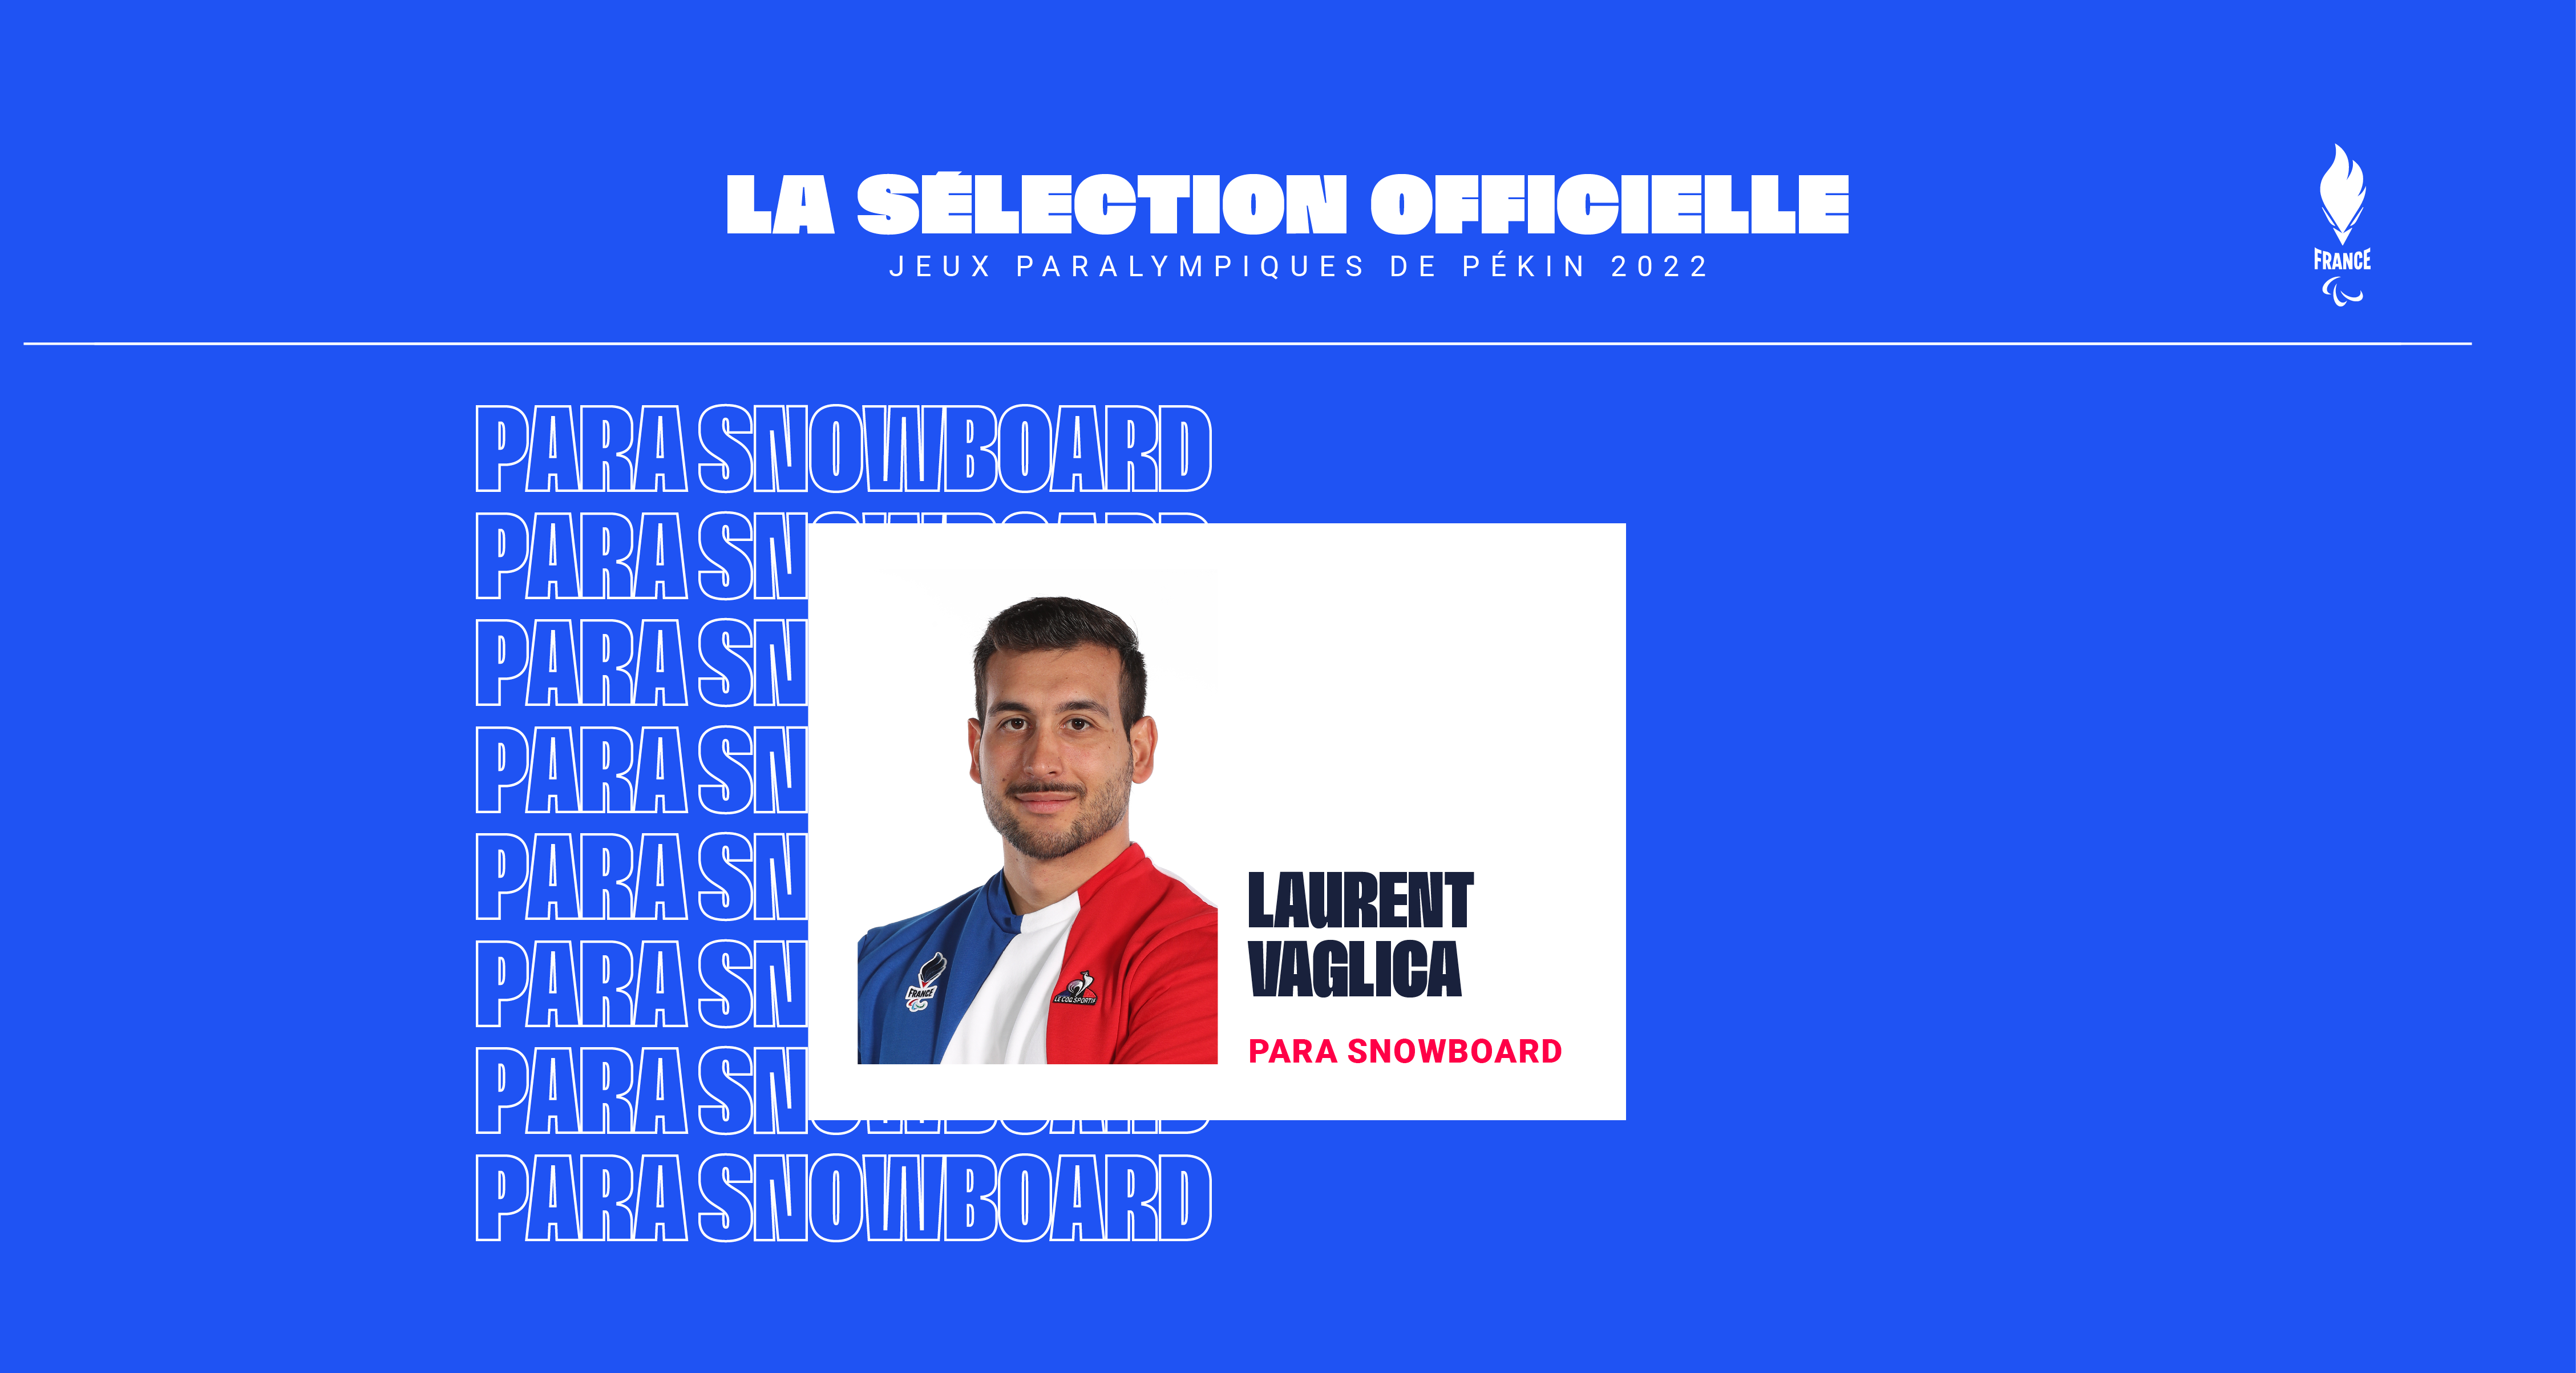 Sélection officielle de Laurent Vaglica en para snowboard